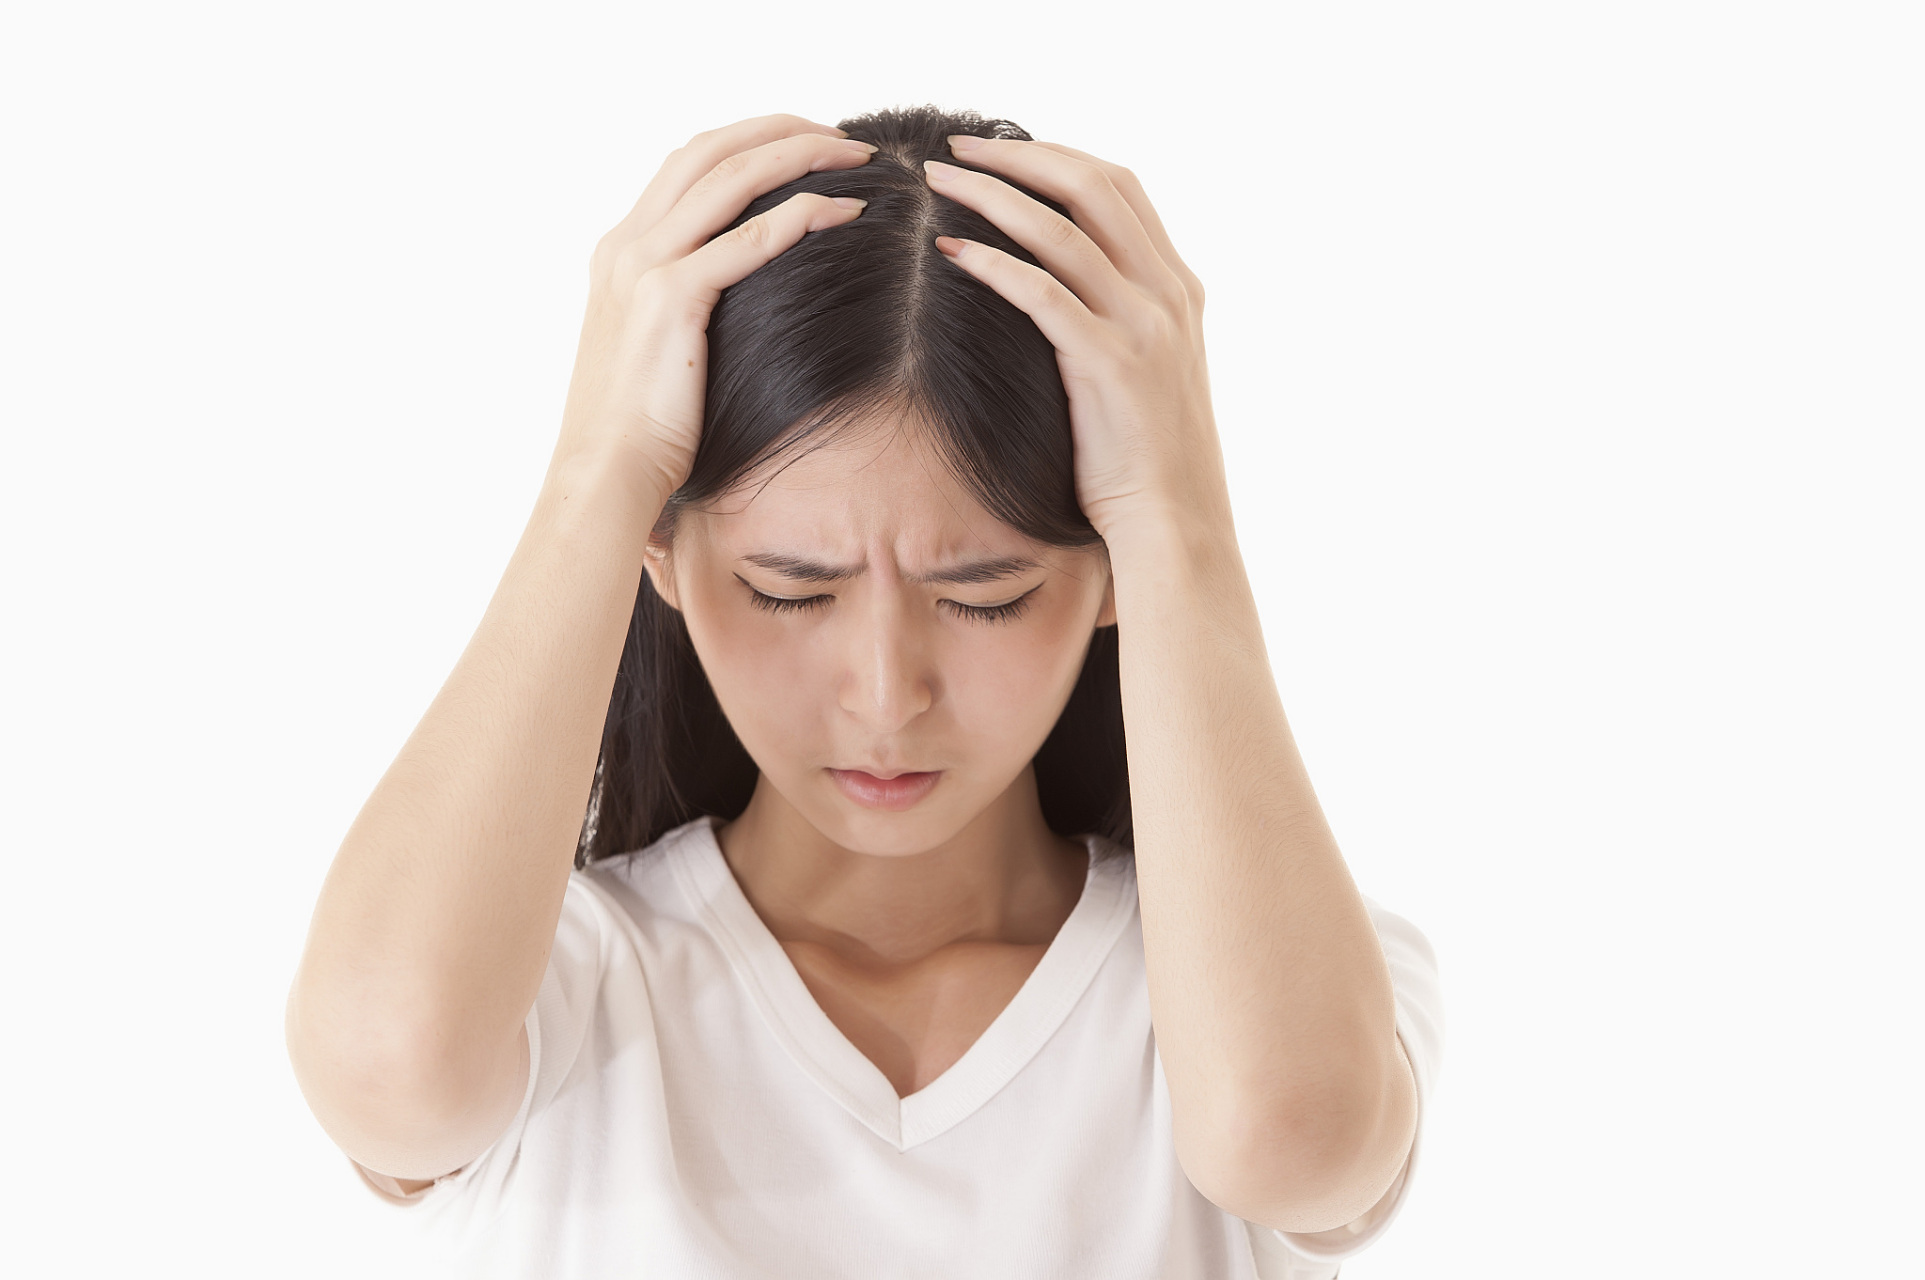 如果你的头痛总是在每天固定时间发生,可能是成簇性